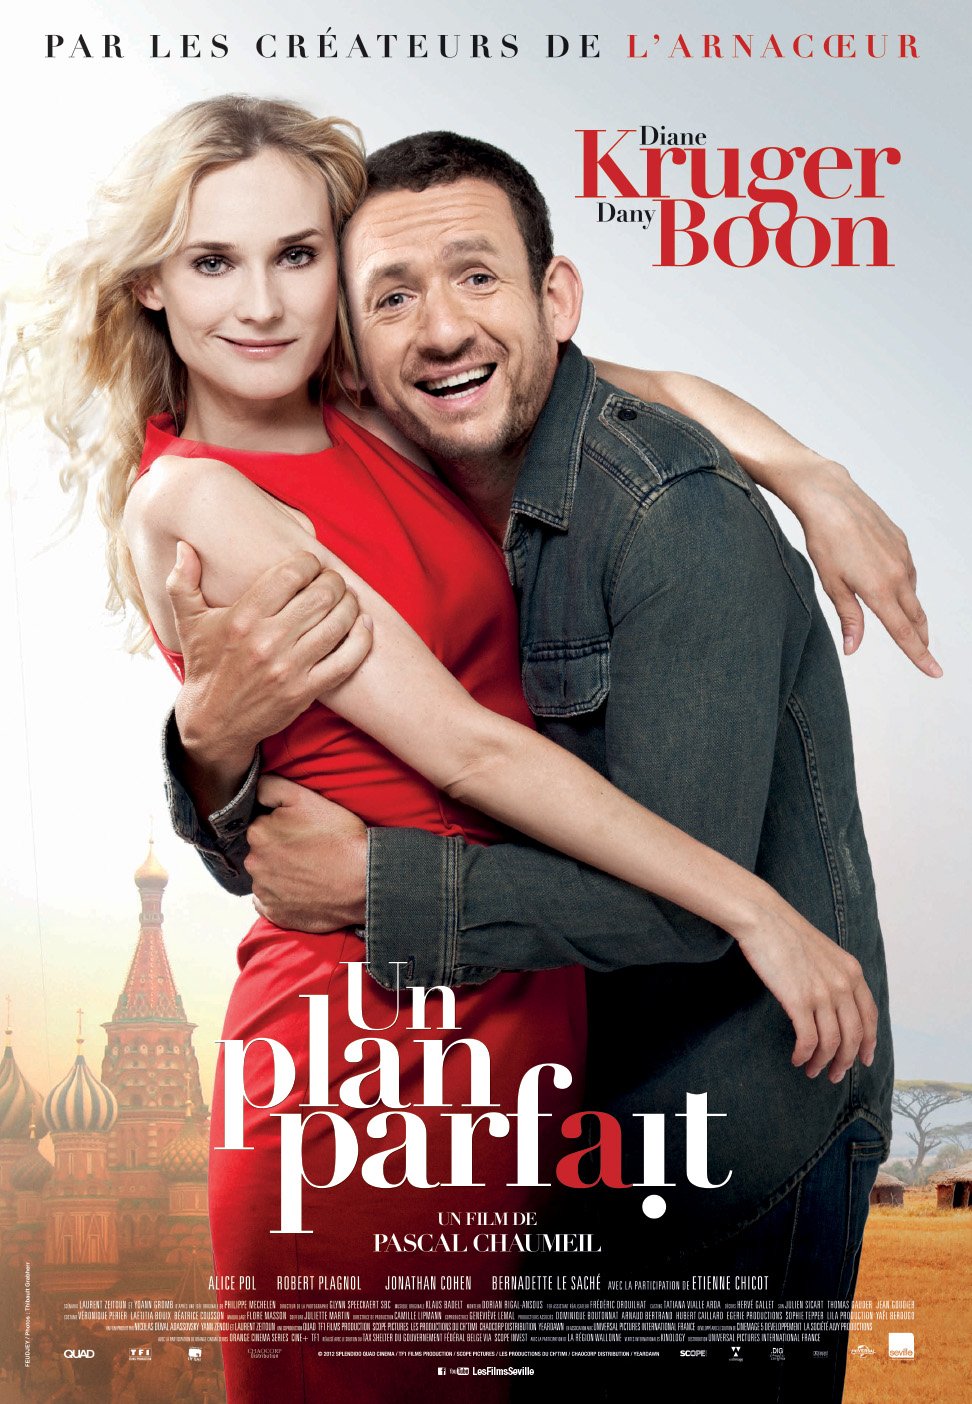 Poster of the movie Un Plan parfait